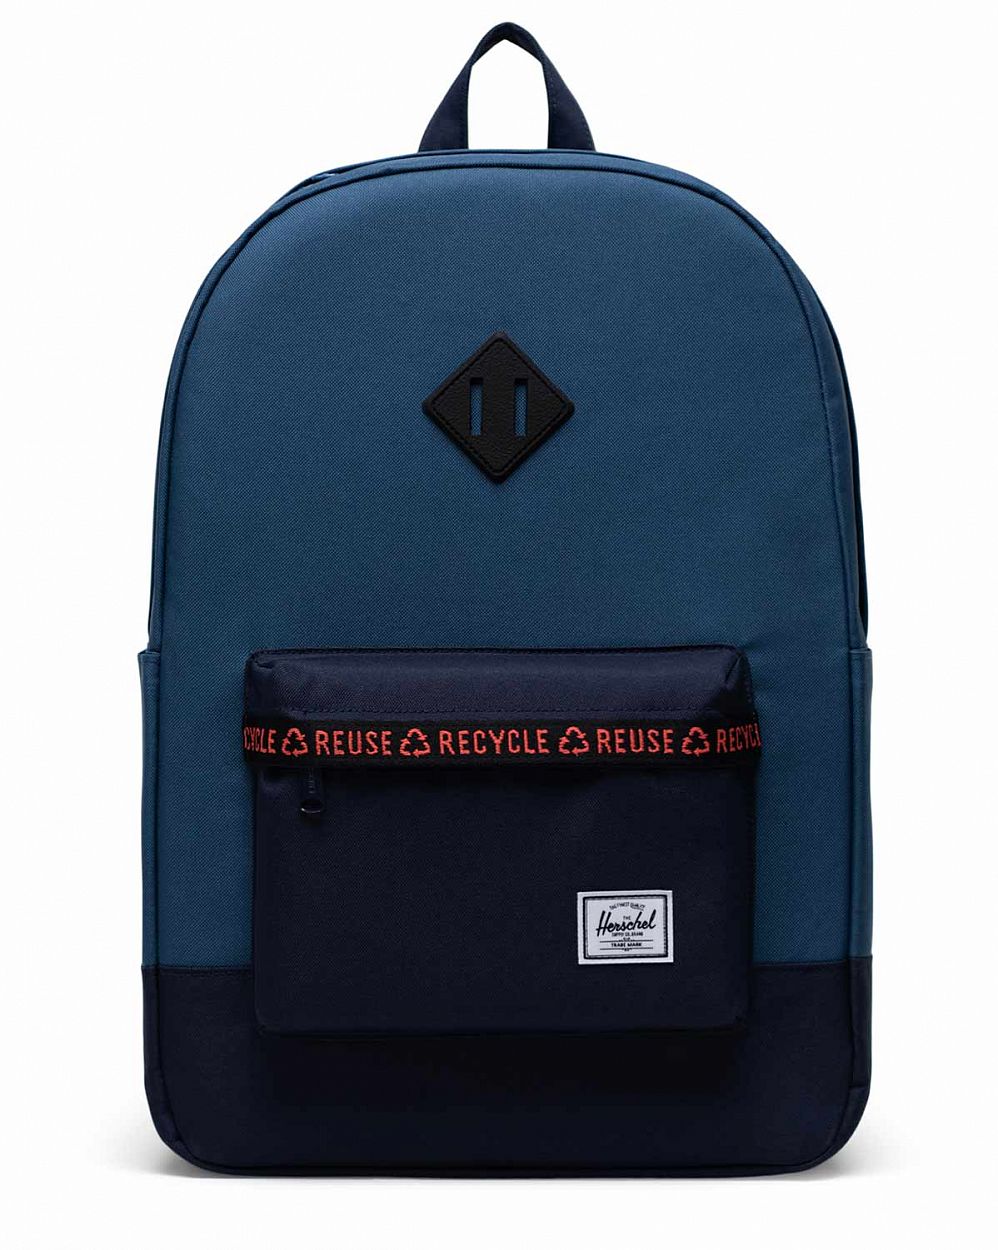 Рюкзак водоотталкивающий с карманом для 15 ноутбука Herschel Heritage Ensign Blue Peacoat отзывы